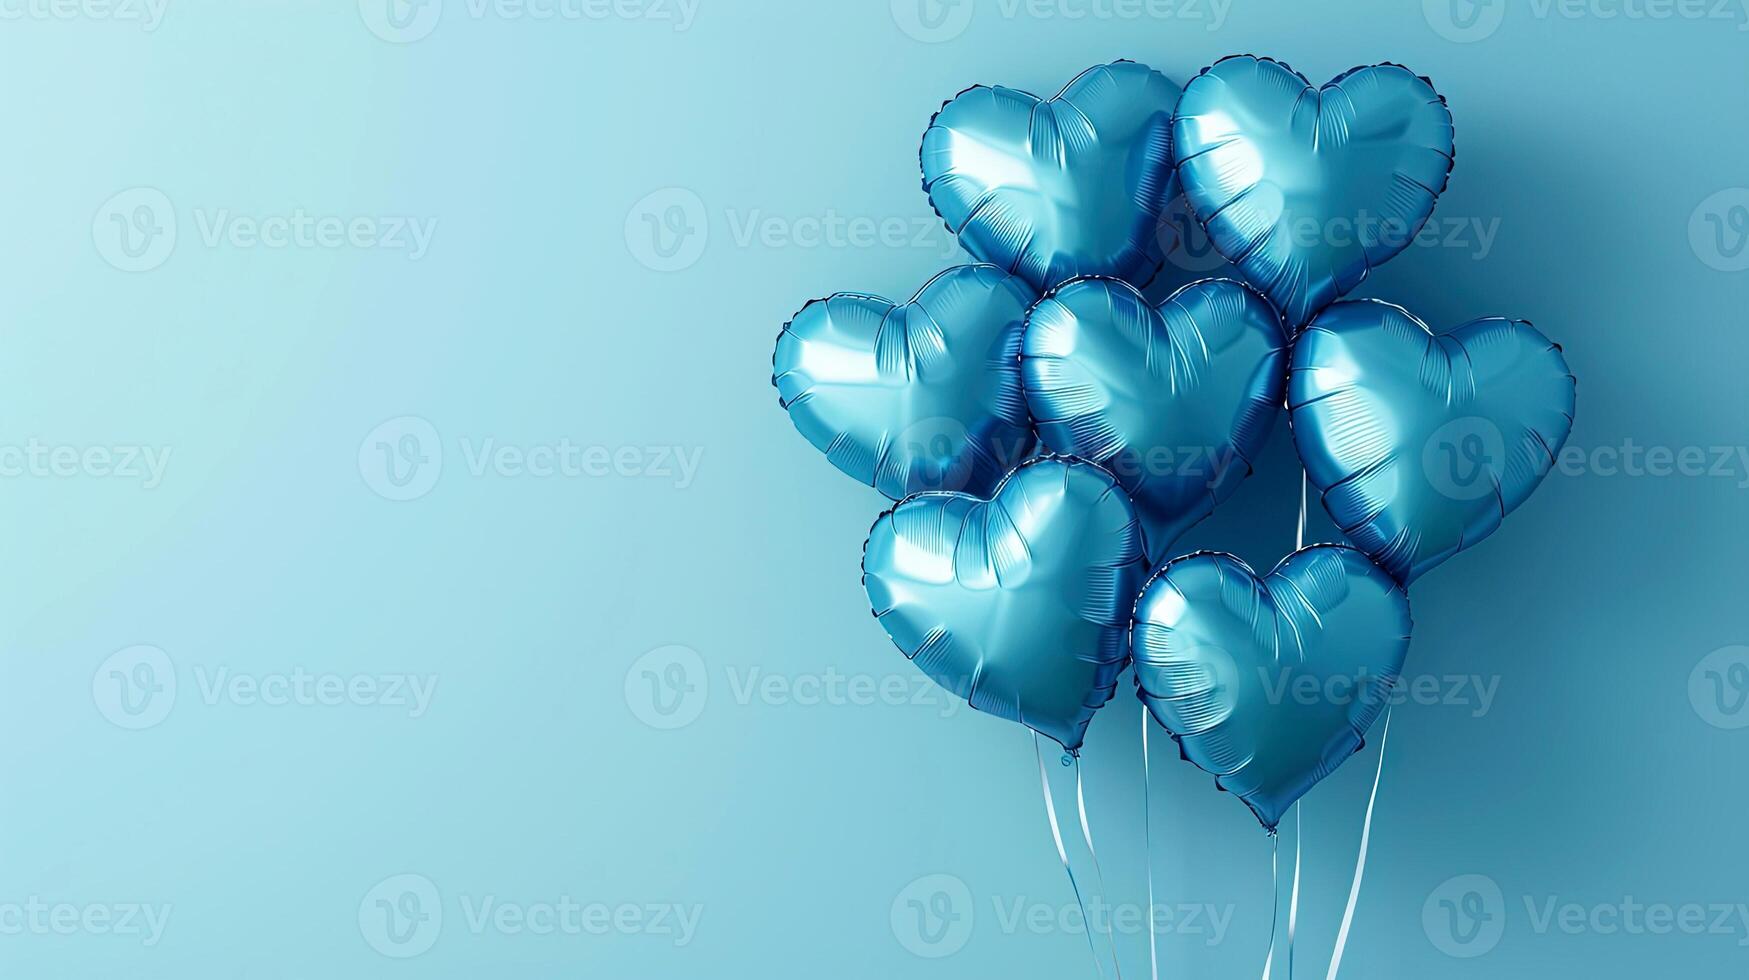 ai gerado azul em forma de coração balões em uma azul fundo. frustrar balões - amor conceito. balões. Sete azul frustrar balões dentro a forma do uma coração em uma azul fundo. foto